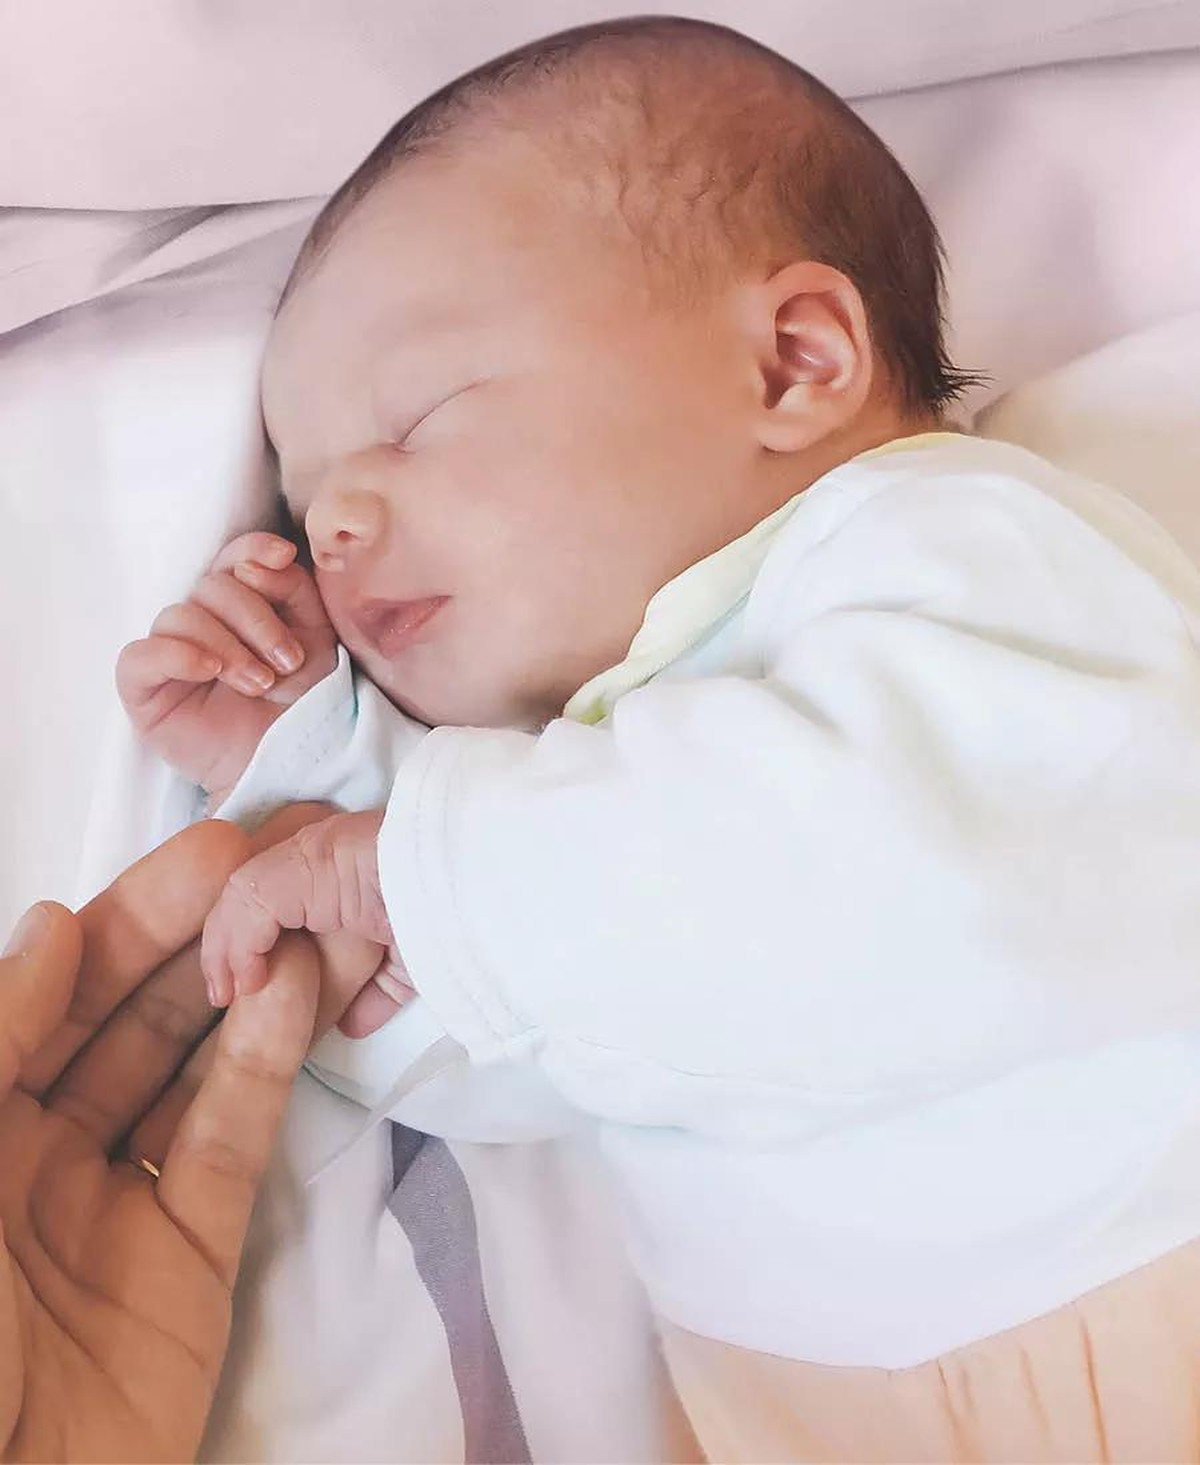 Voz da mãe ajuda bebês prematuros a sentirem menos dor, diz estudo